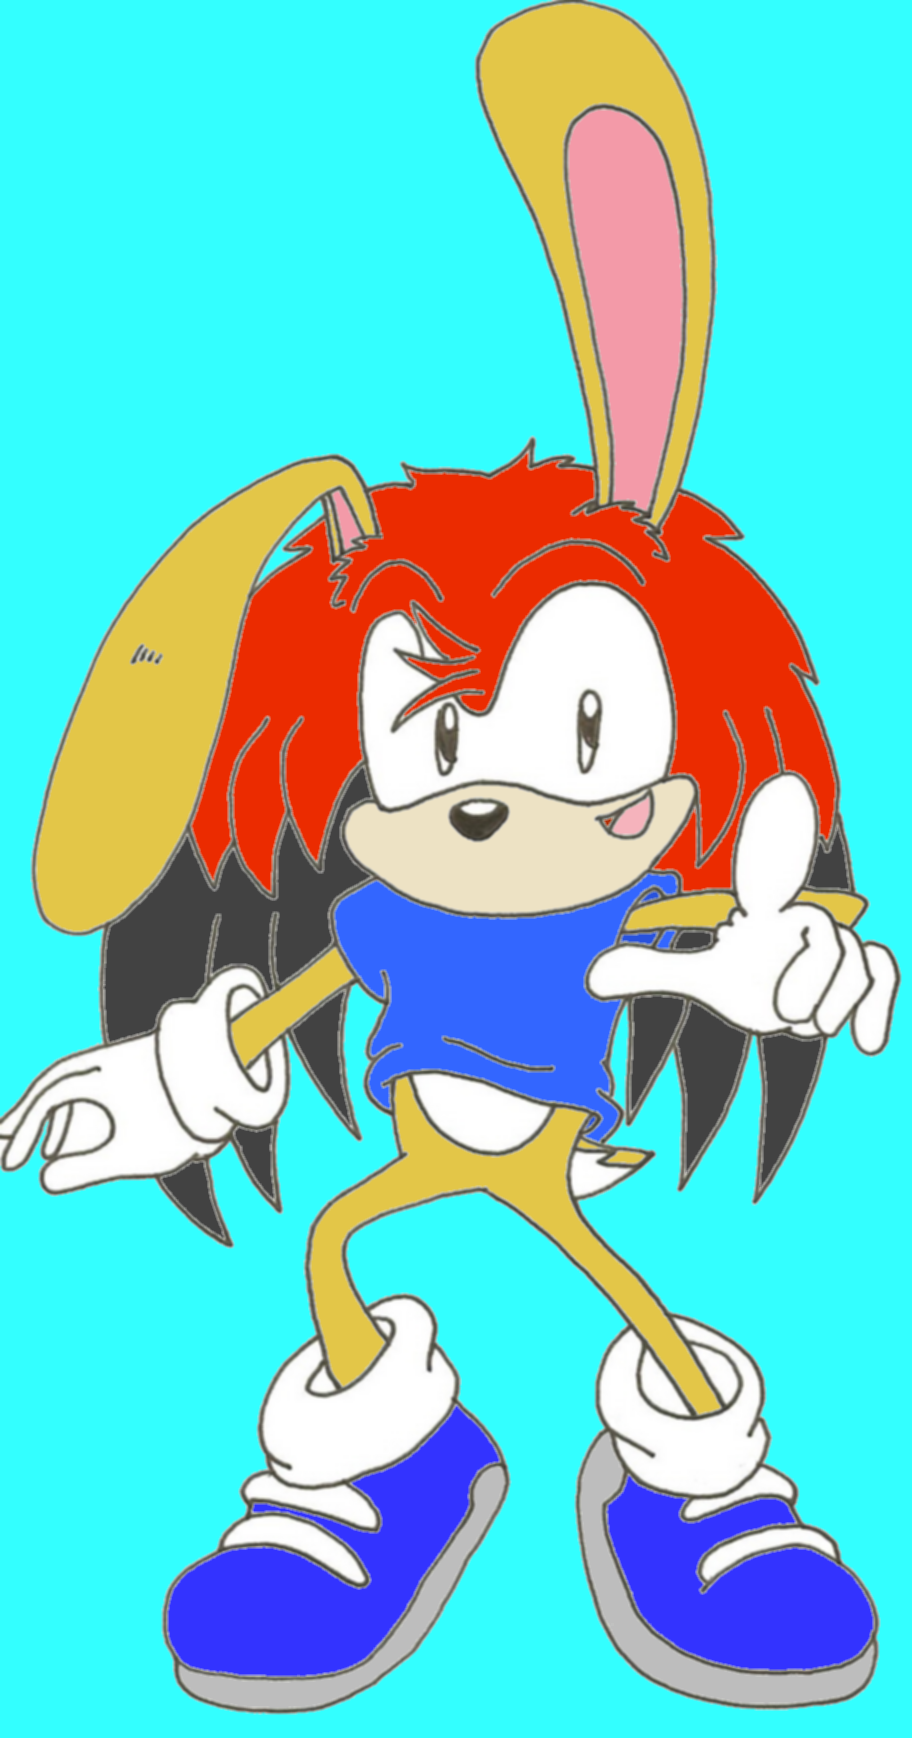 Johnny the Bunny (Cartoony style) by jkgoomba89